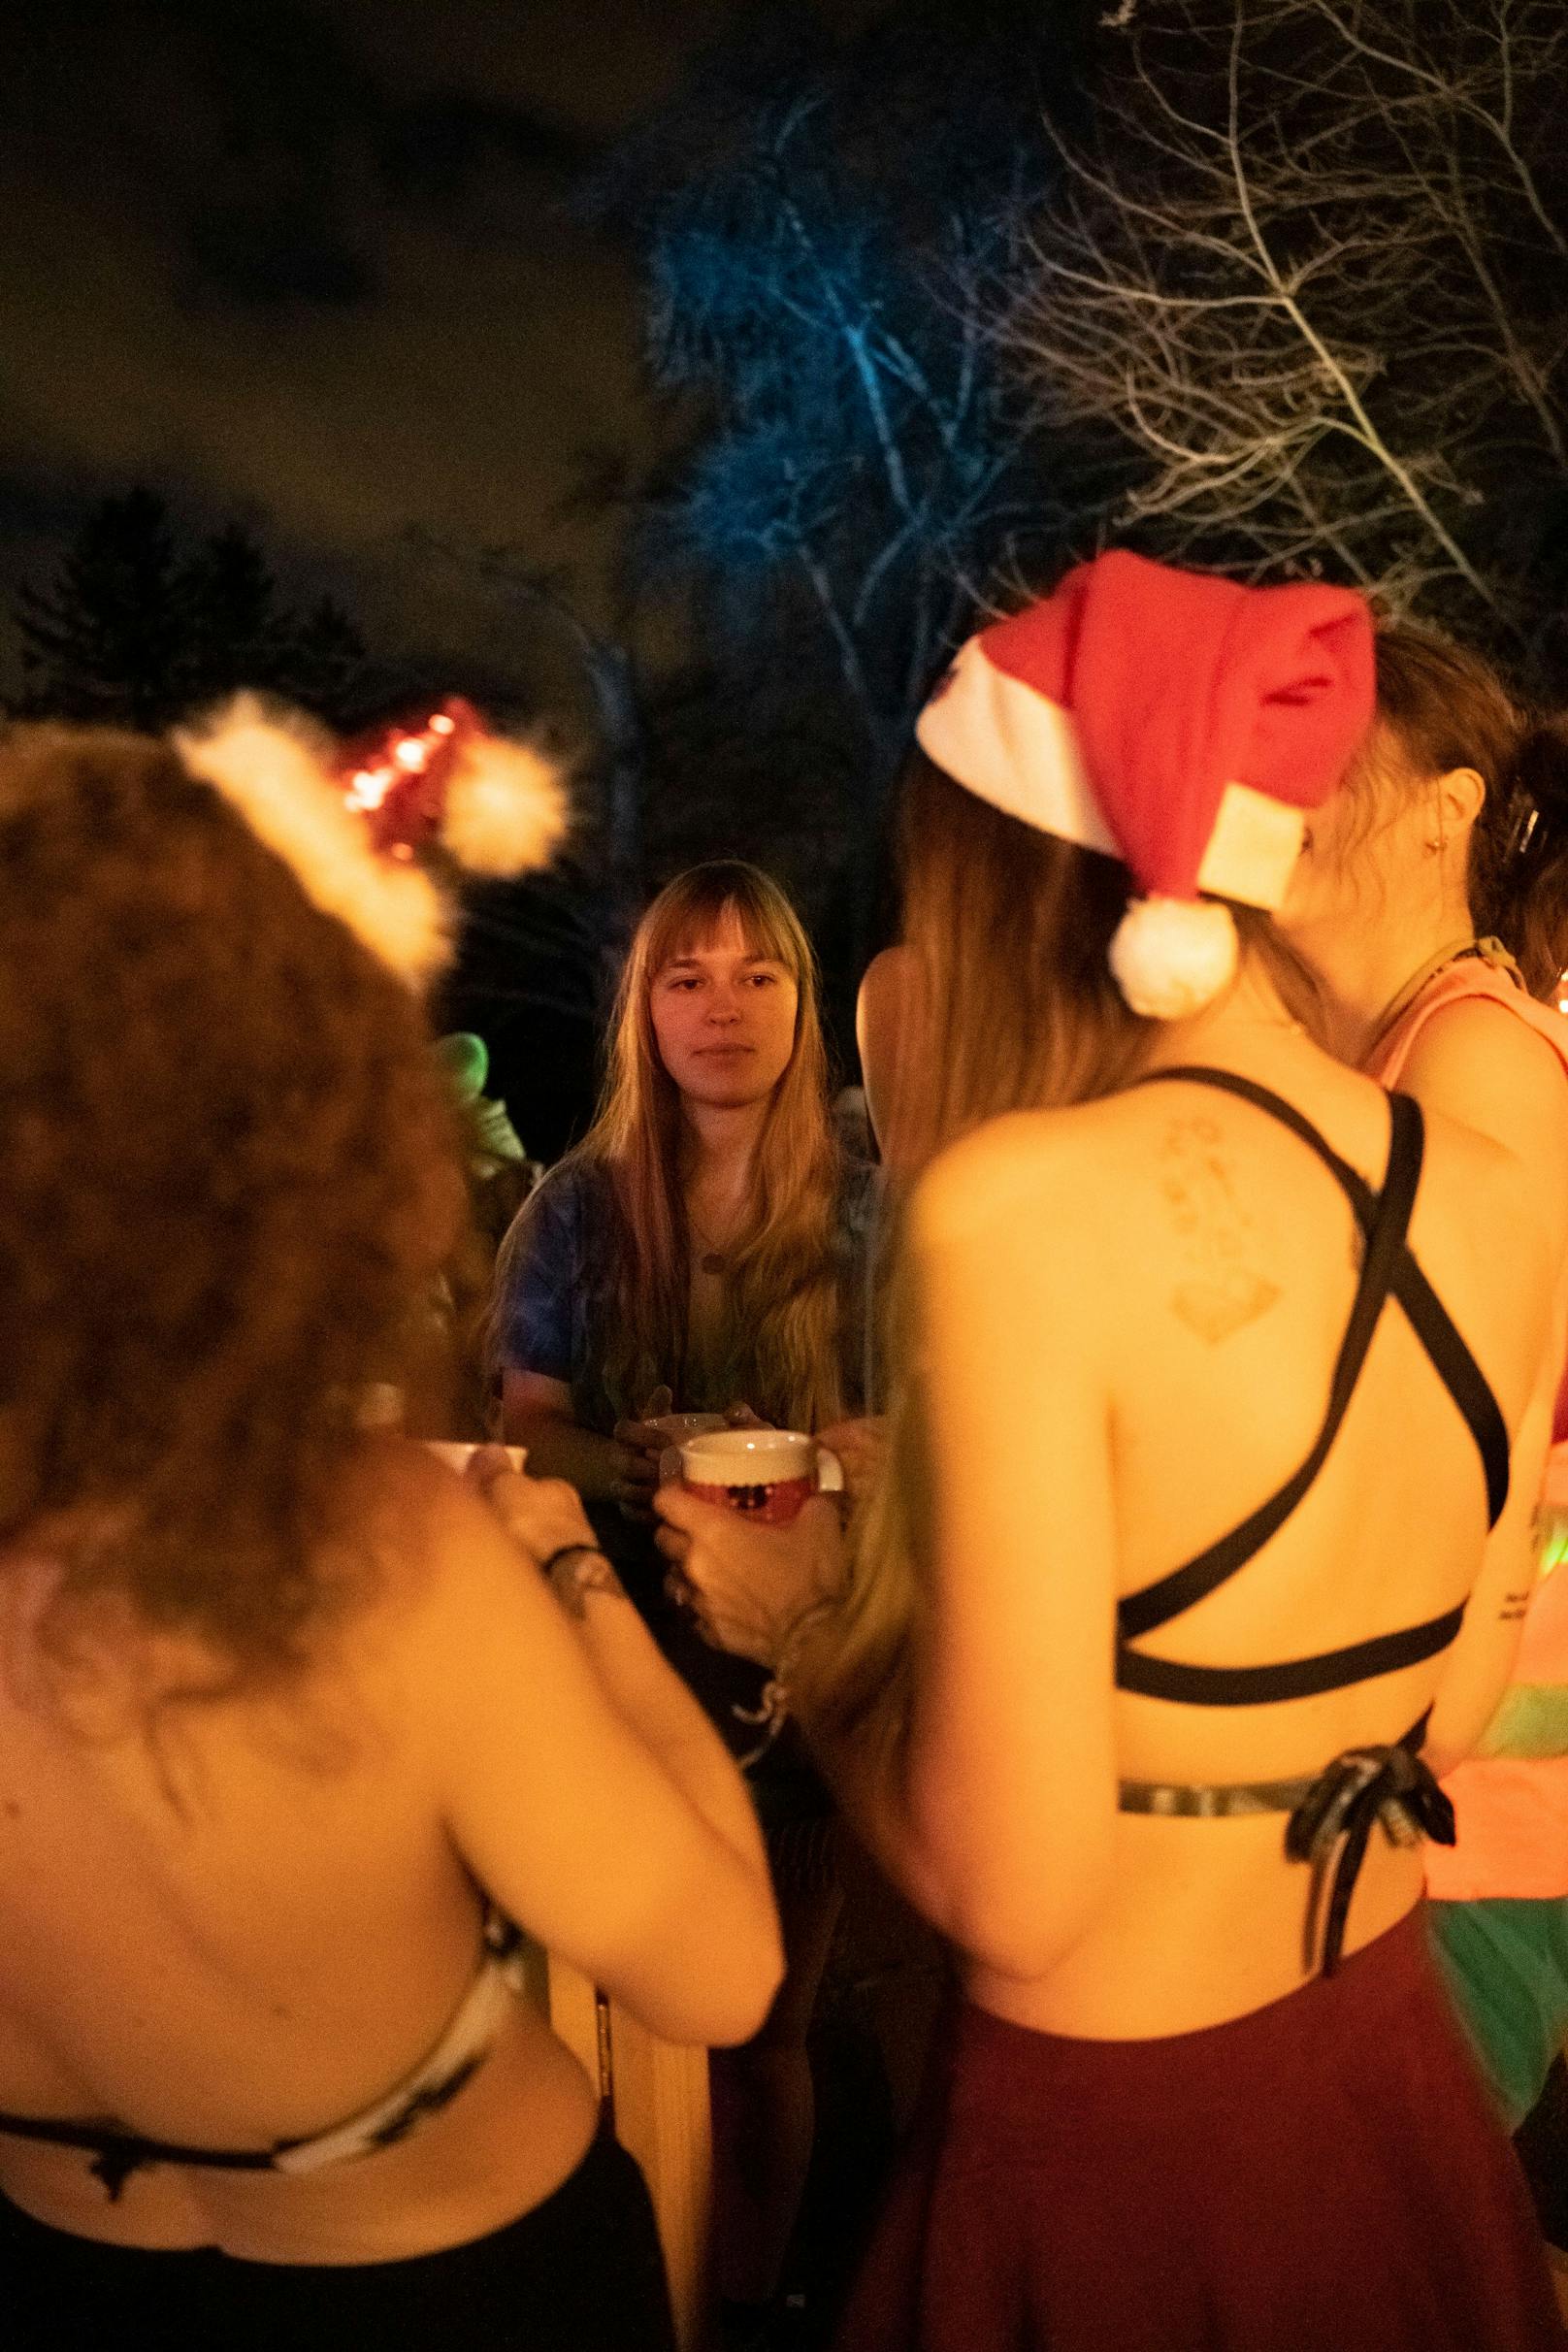 Im Bikini am Punschstand? Satirisch veranschaulichte die Letzte Generation am Weihnachtsmarkt im Wiener Türkenschanzpark, wie rosig sich viele Menschen die Folgen der Erderhitzung vorstellen.